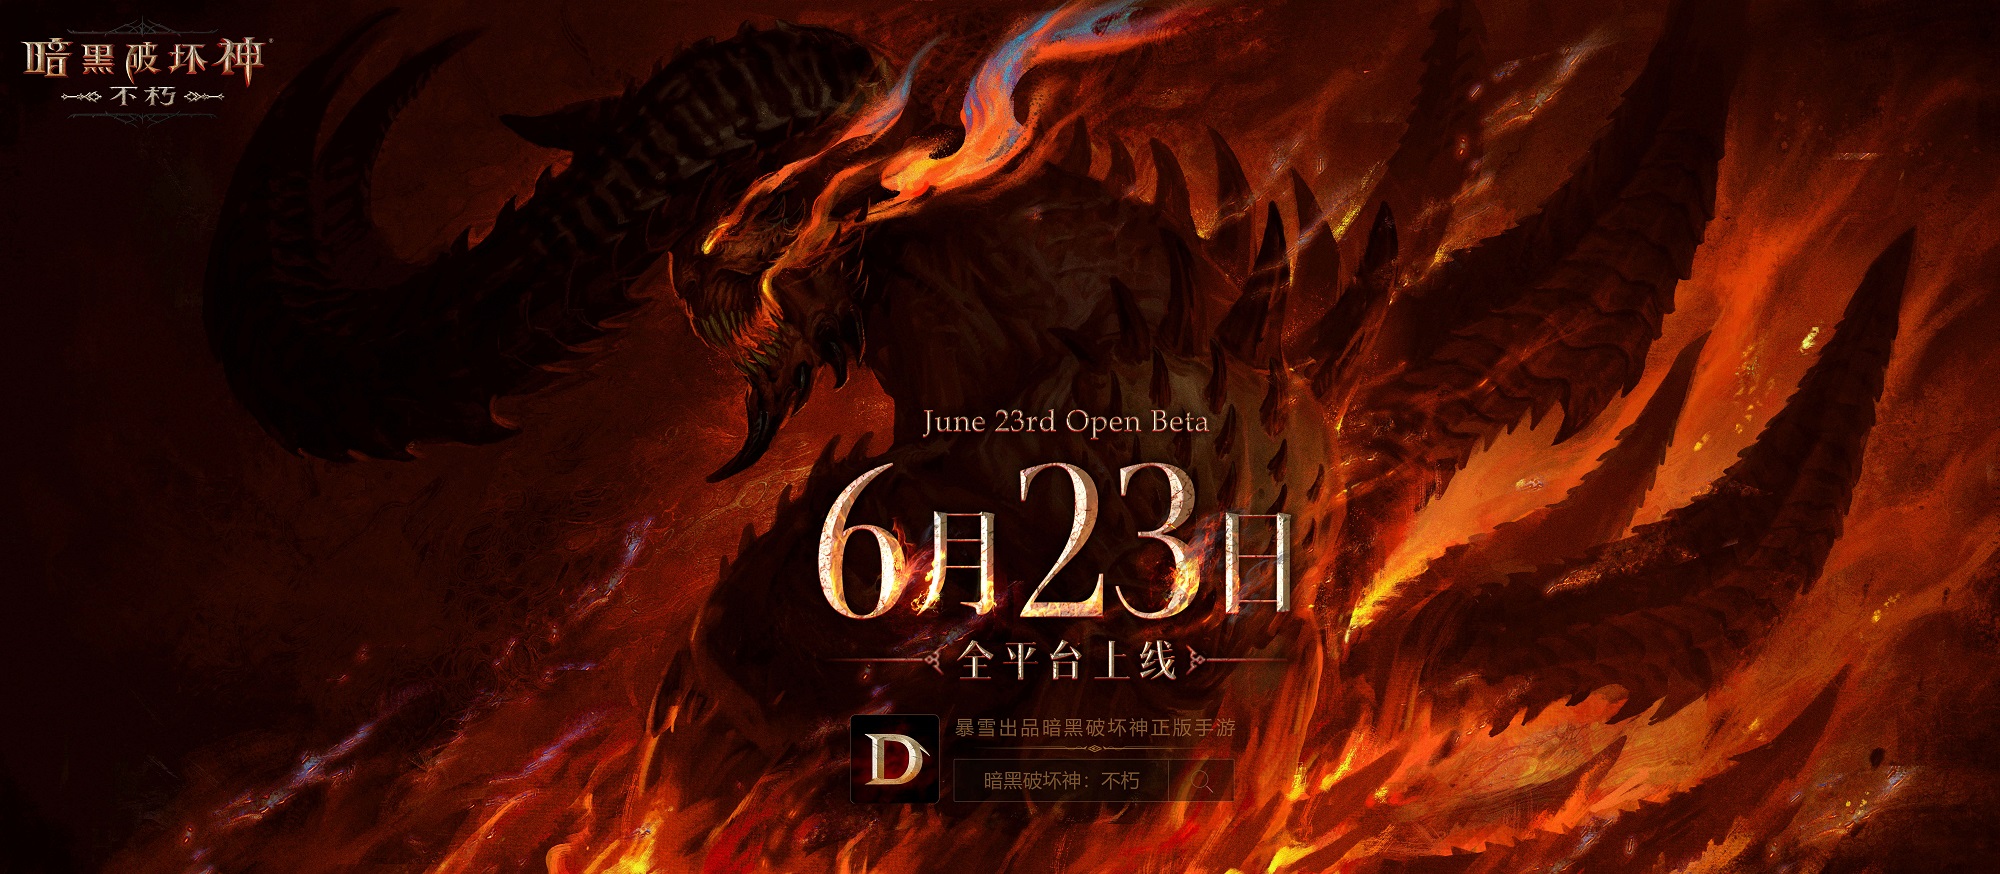 【戰網PC同步】《暗黑破壞神永生不朽》將於6月23日全平台上線